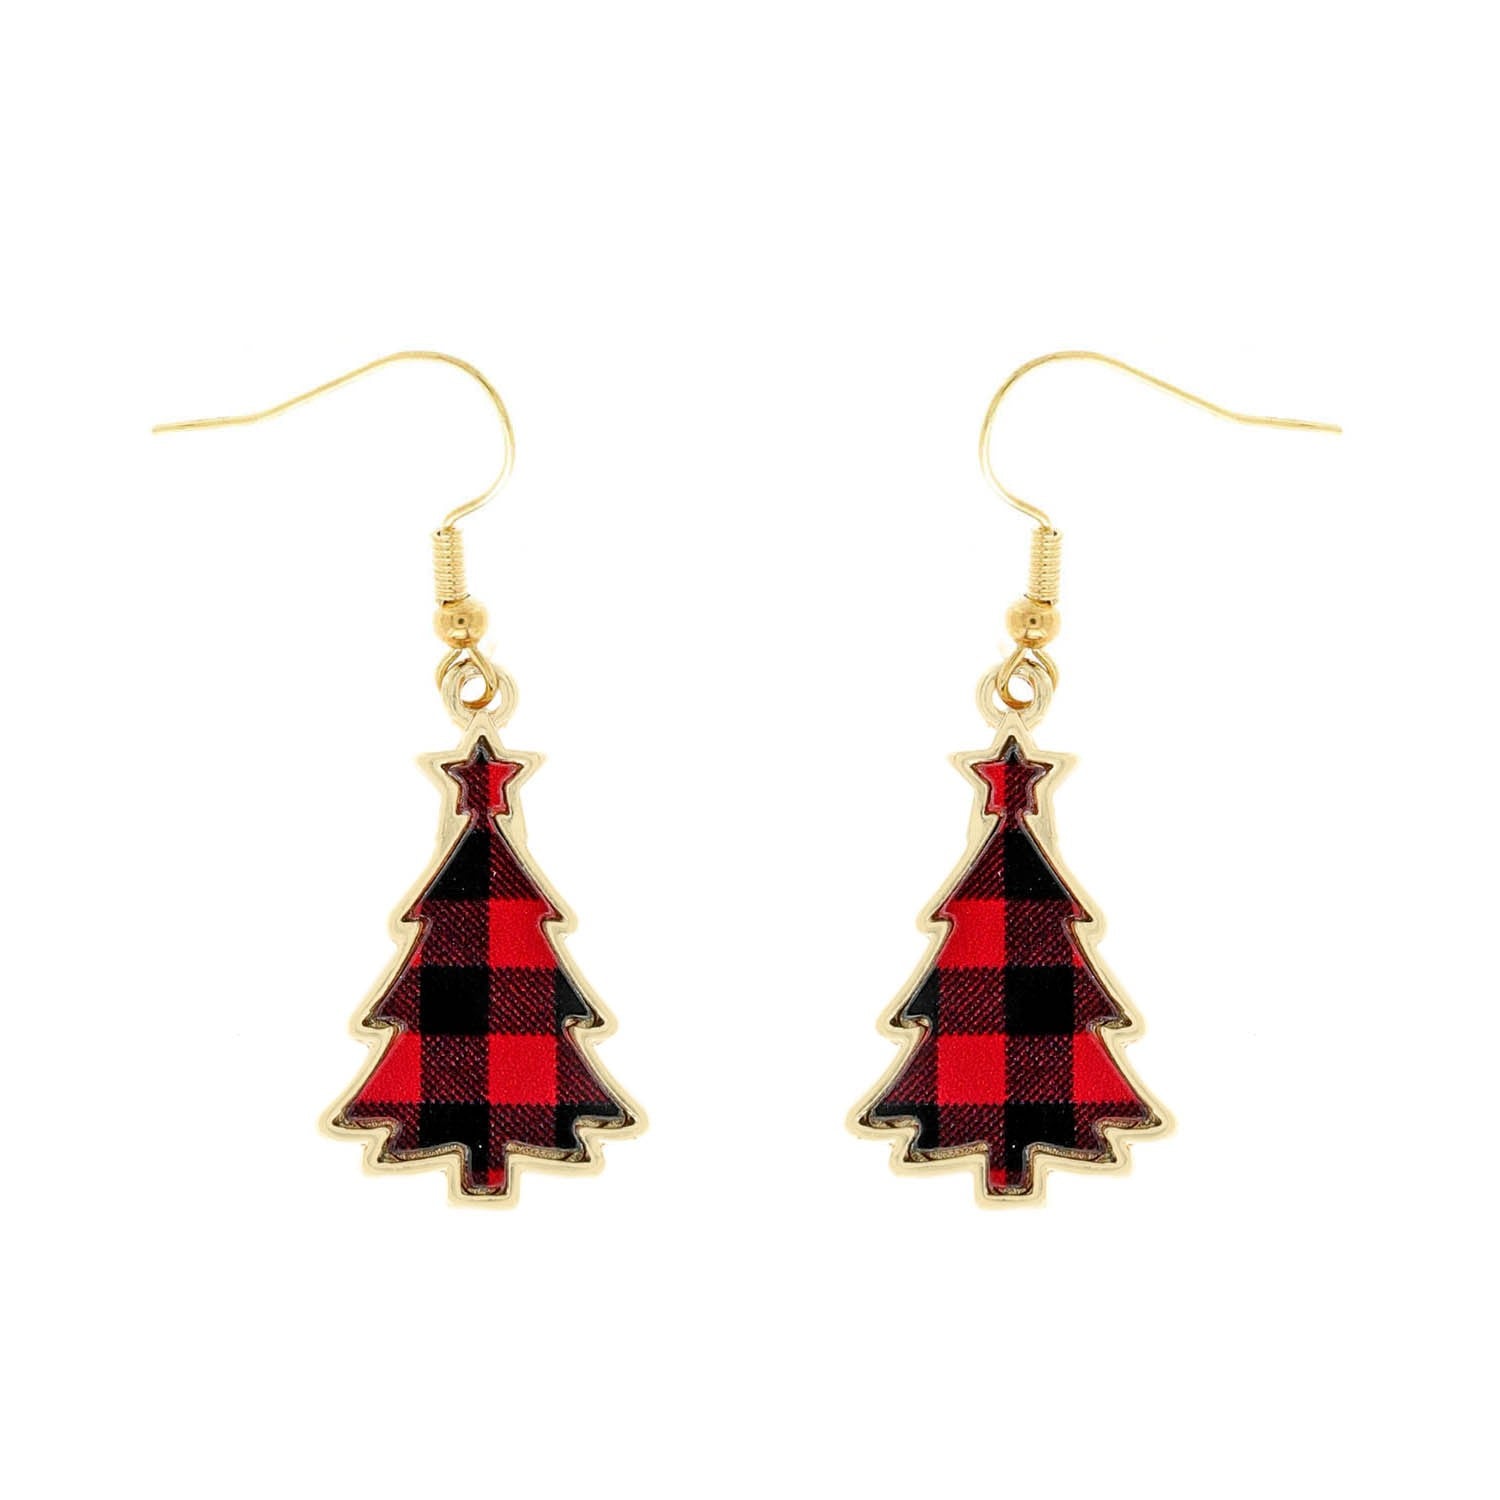 Red Plaid Christmas Tree Earrings